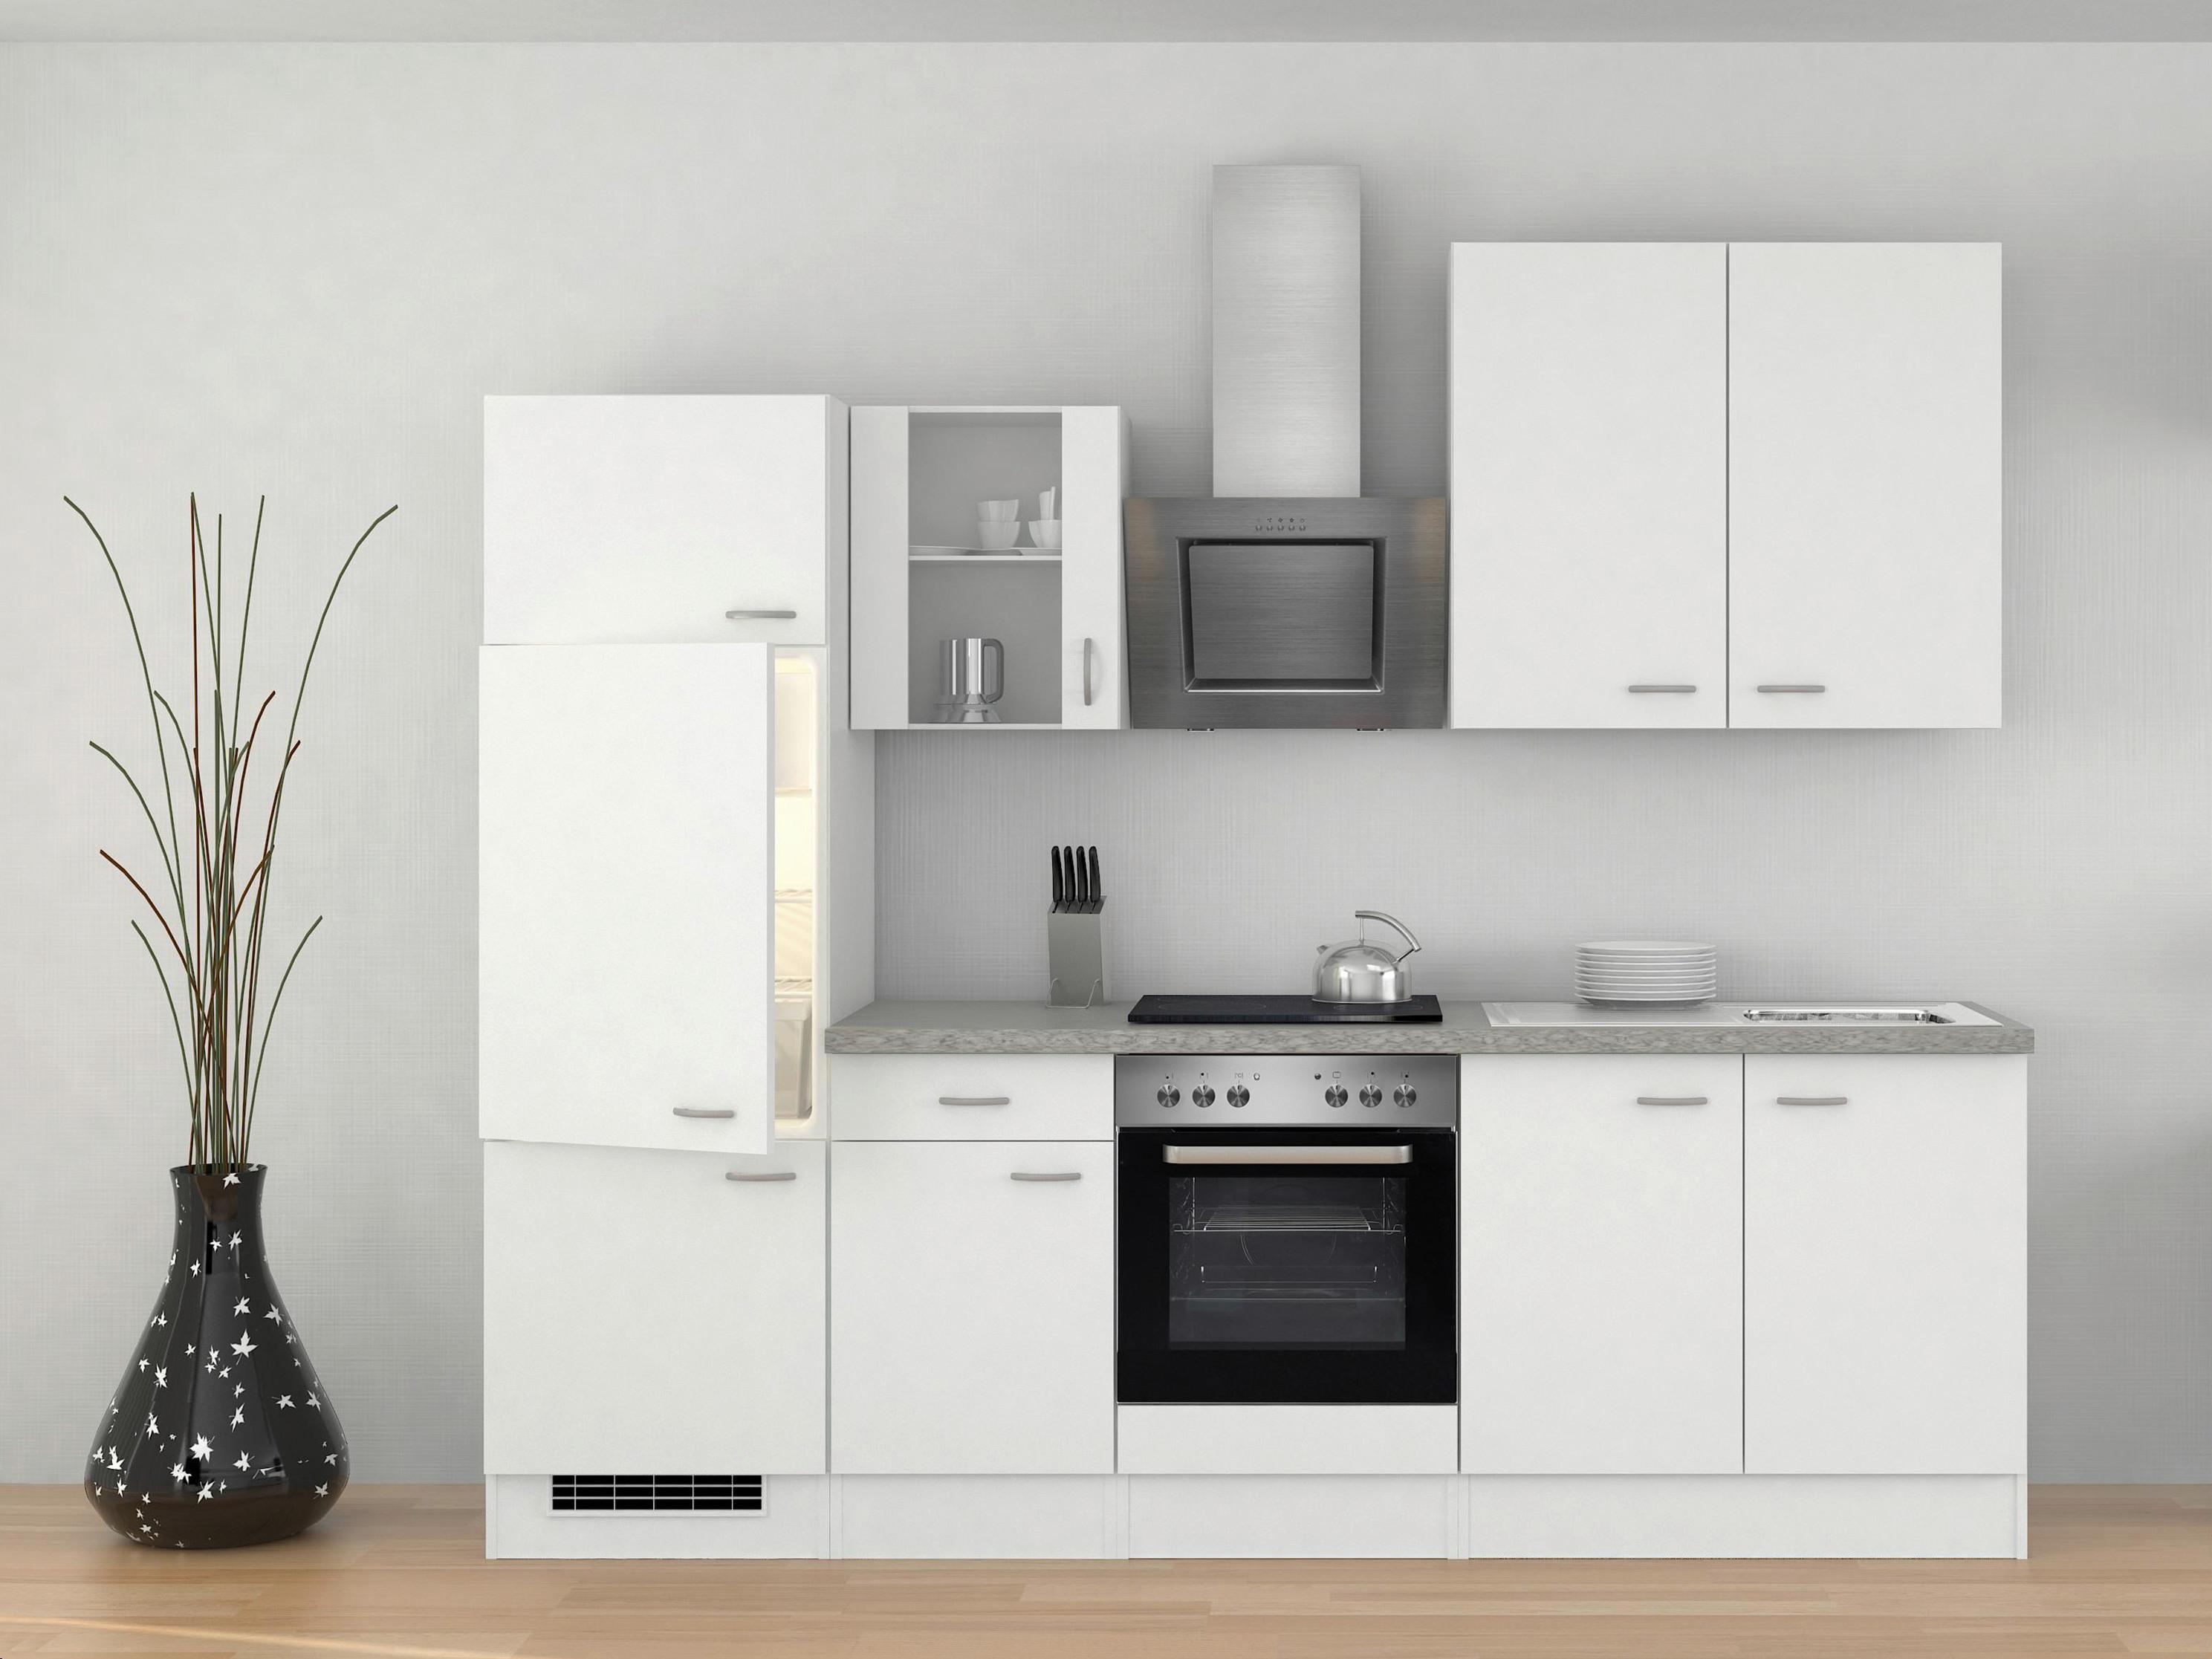 Küchenblock in Weiss inkl. Geräte und Spüle 'Wito' online kaufen ➤ mömax